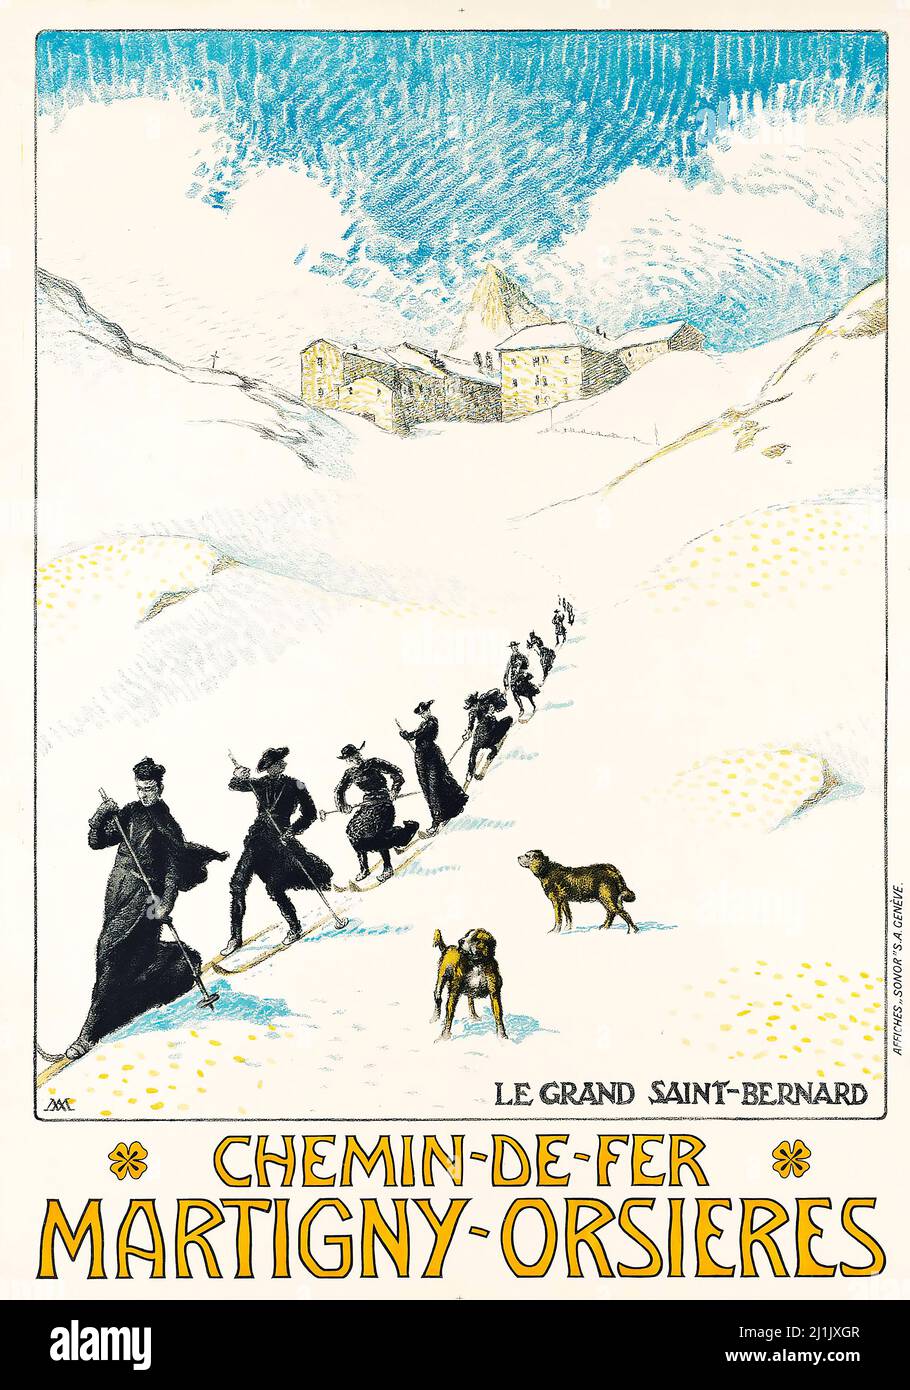 Affiche de voyage antique 1913. Sports d'hiver, ski - Albert Muret. CHEMIN-DE-fer, MARTIGNY-ORSIERES, le Grand Saint-Bernard. Banque D'Images